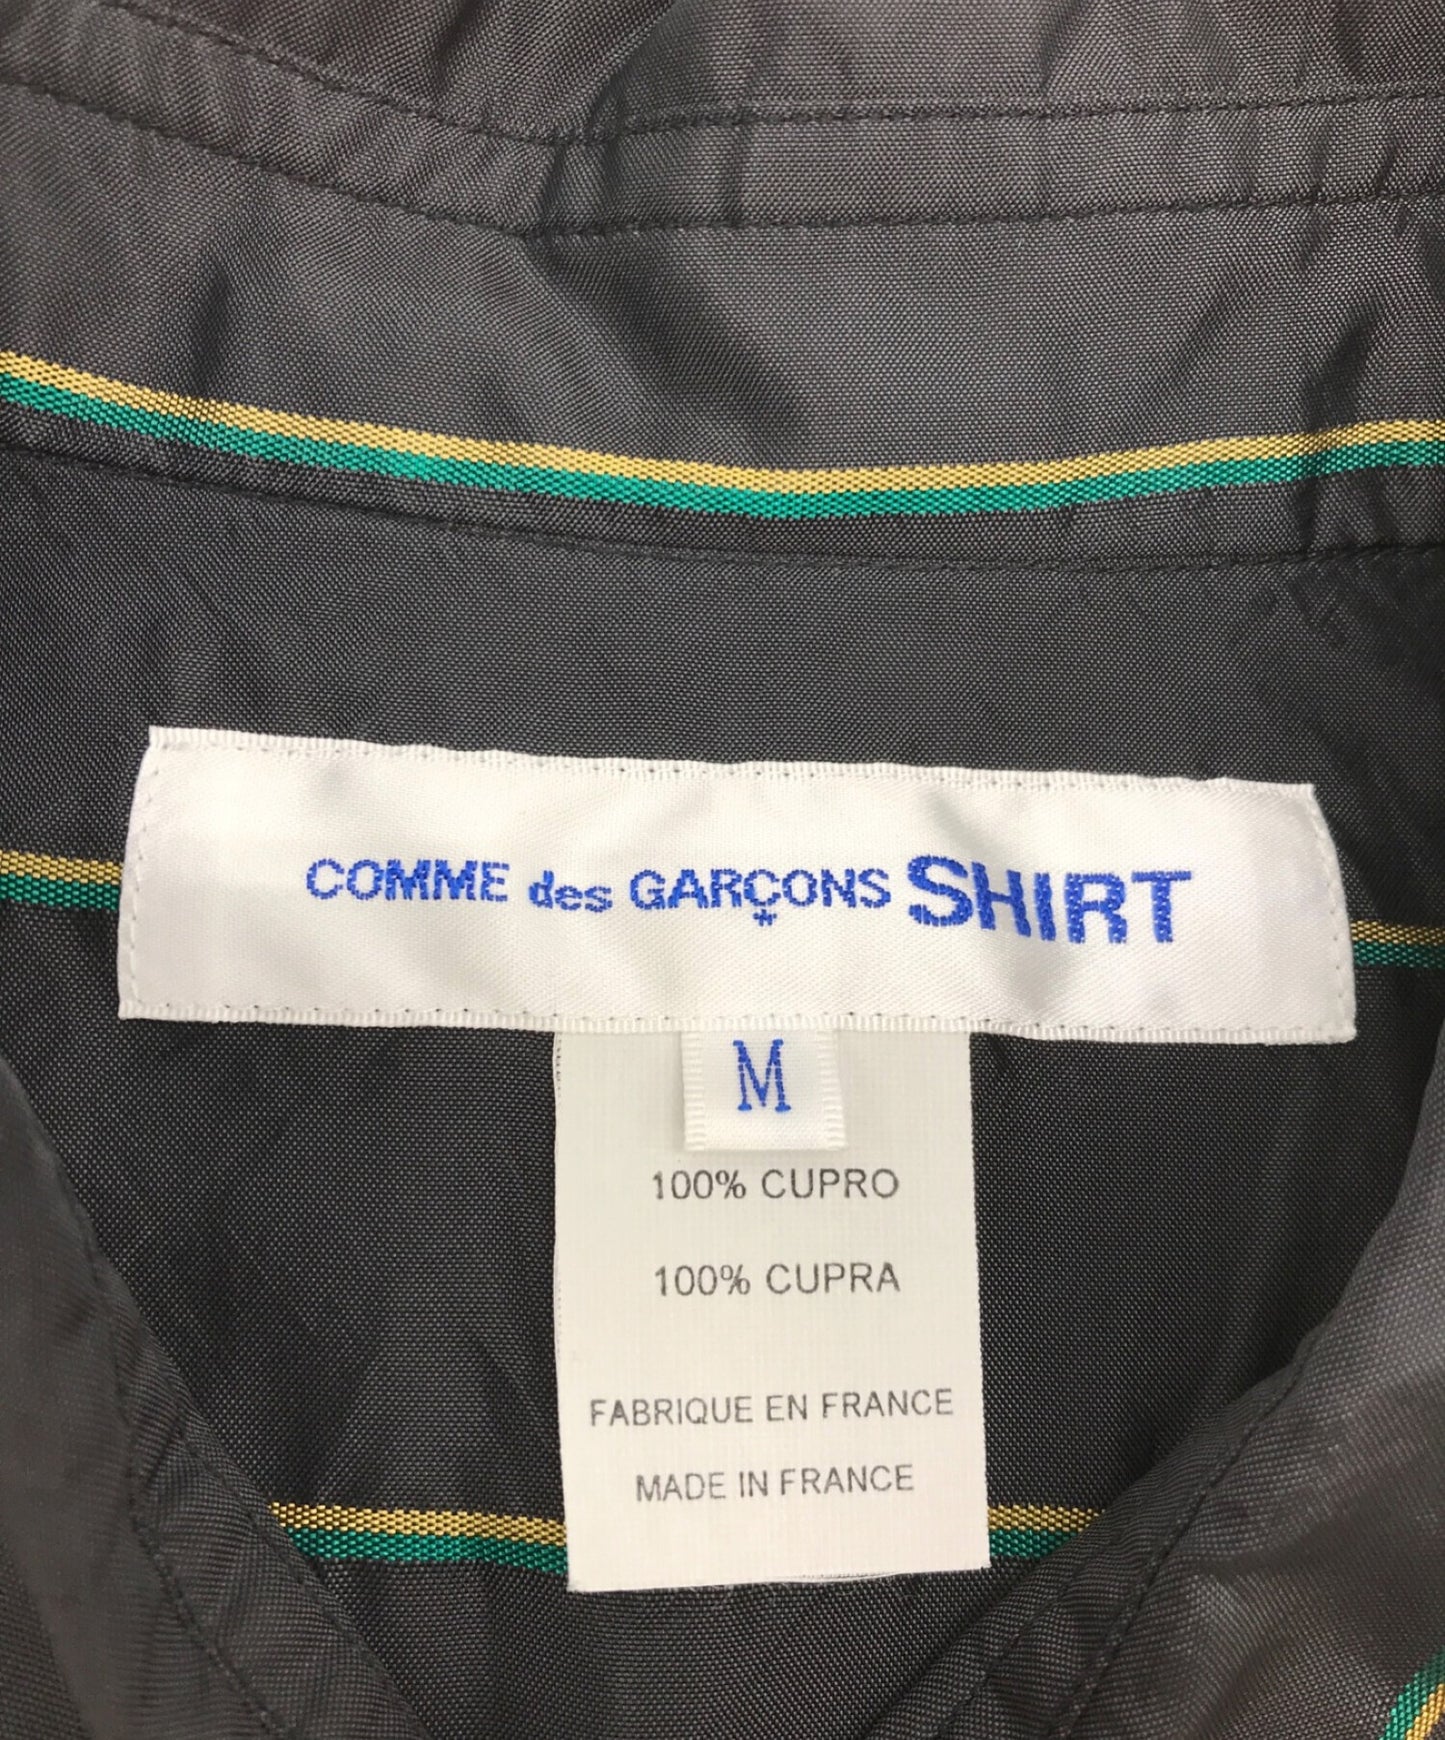 Comme des Garcons衬衫条纹开关衬衫条纹衬衫长袖衬衫衬衫S27065